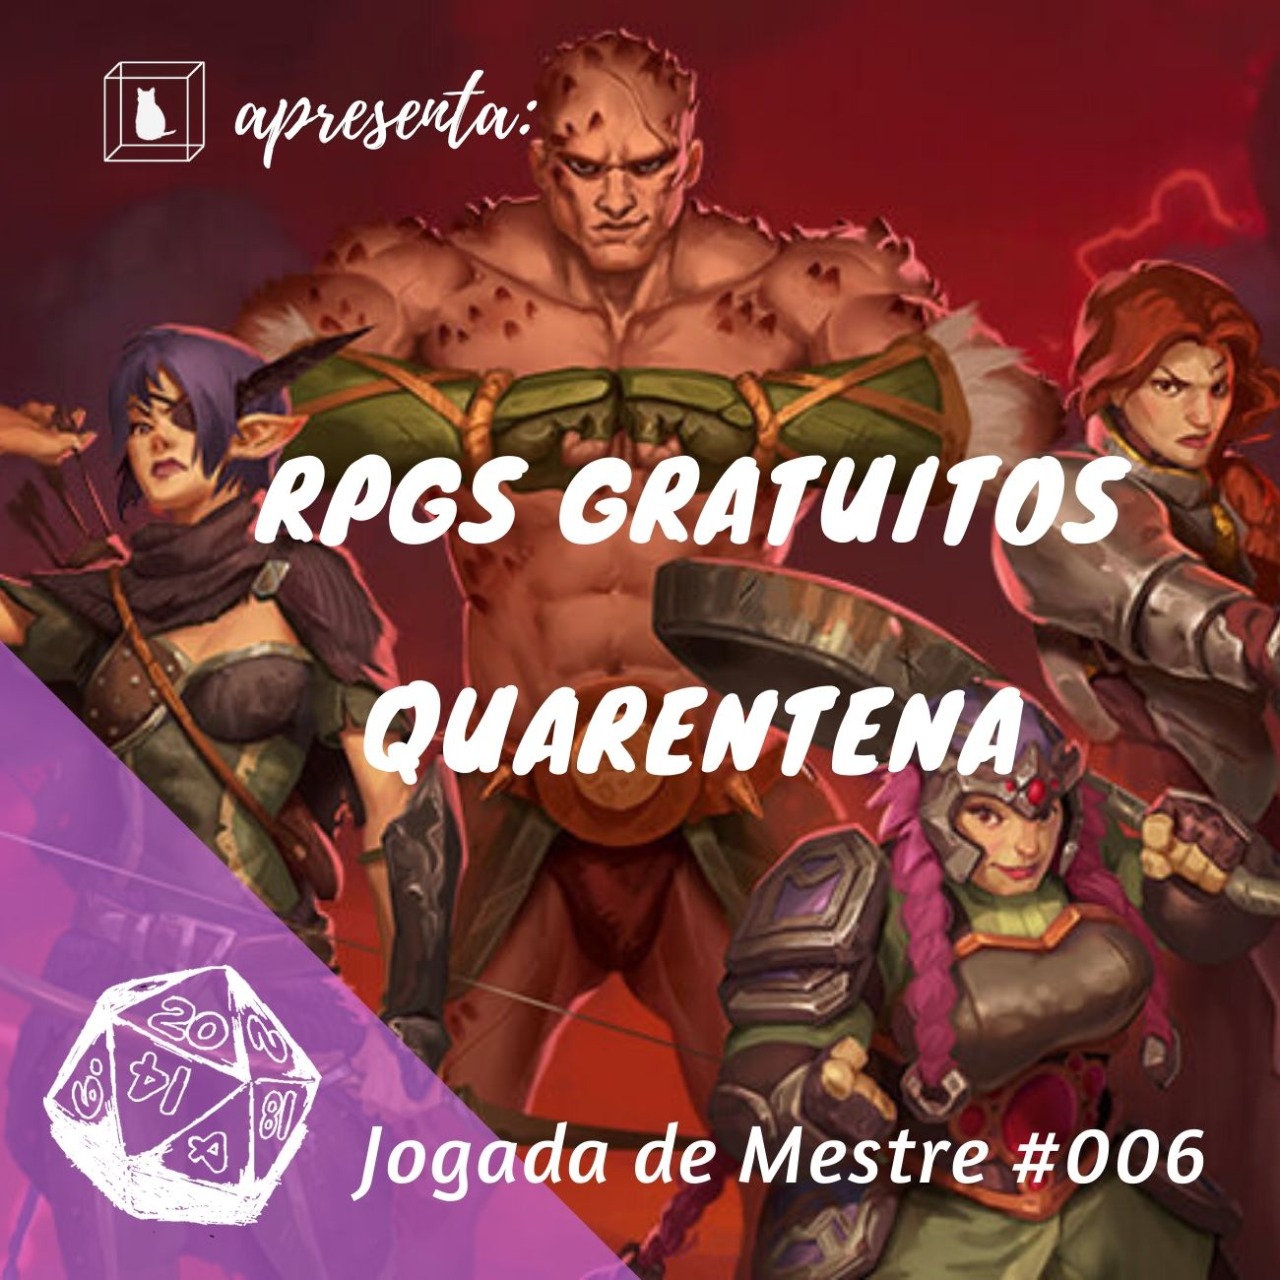 Como Jogar RPG de Mesa: O Guia Definitivo - Baixe o Ebook GRÁTIS :  r/rpg_brasil